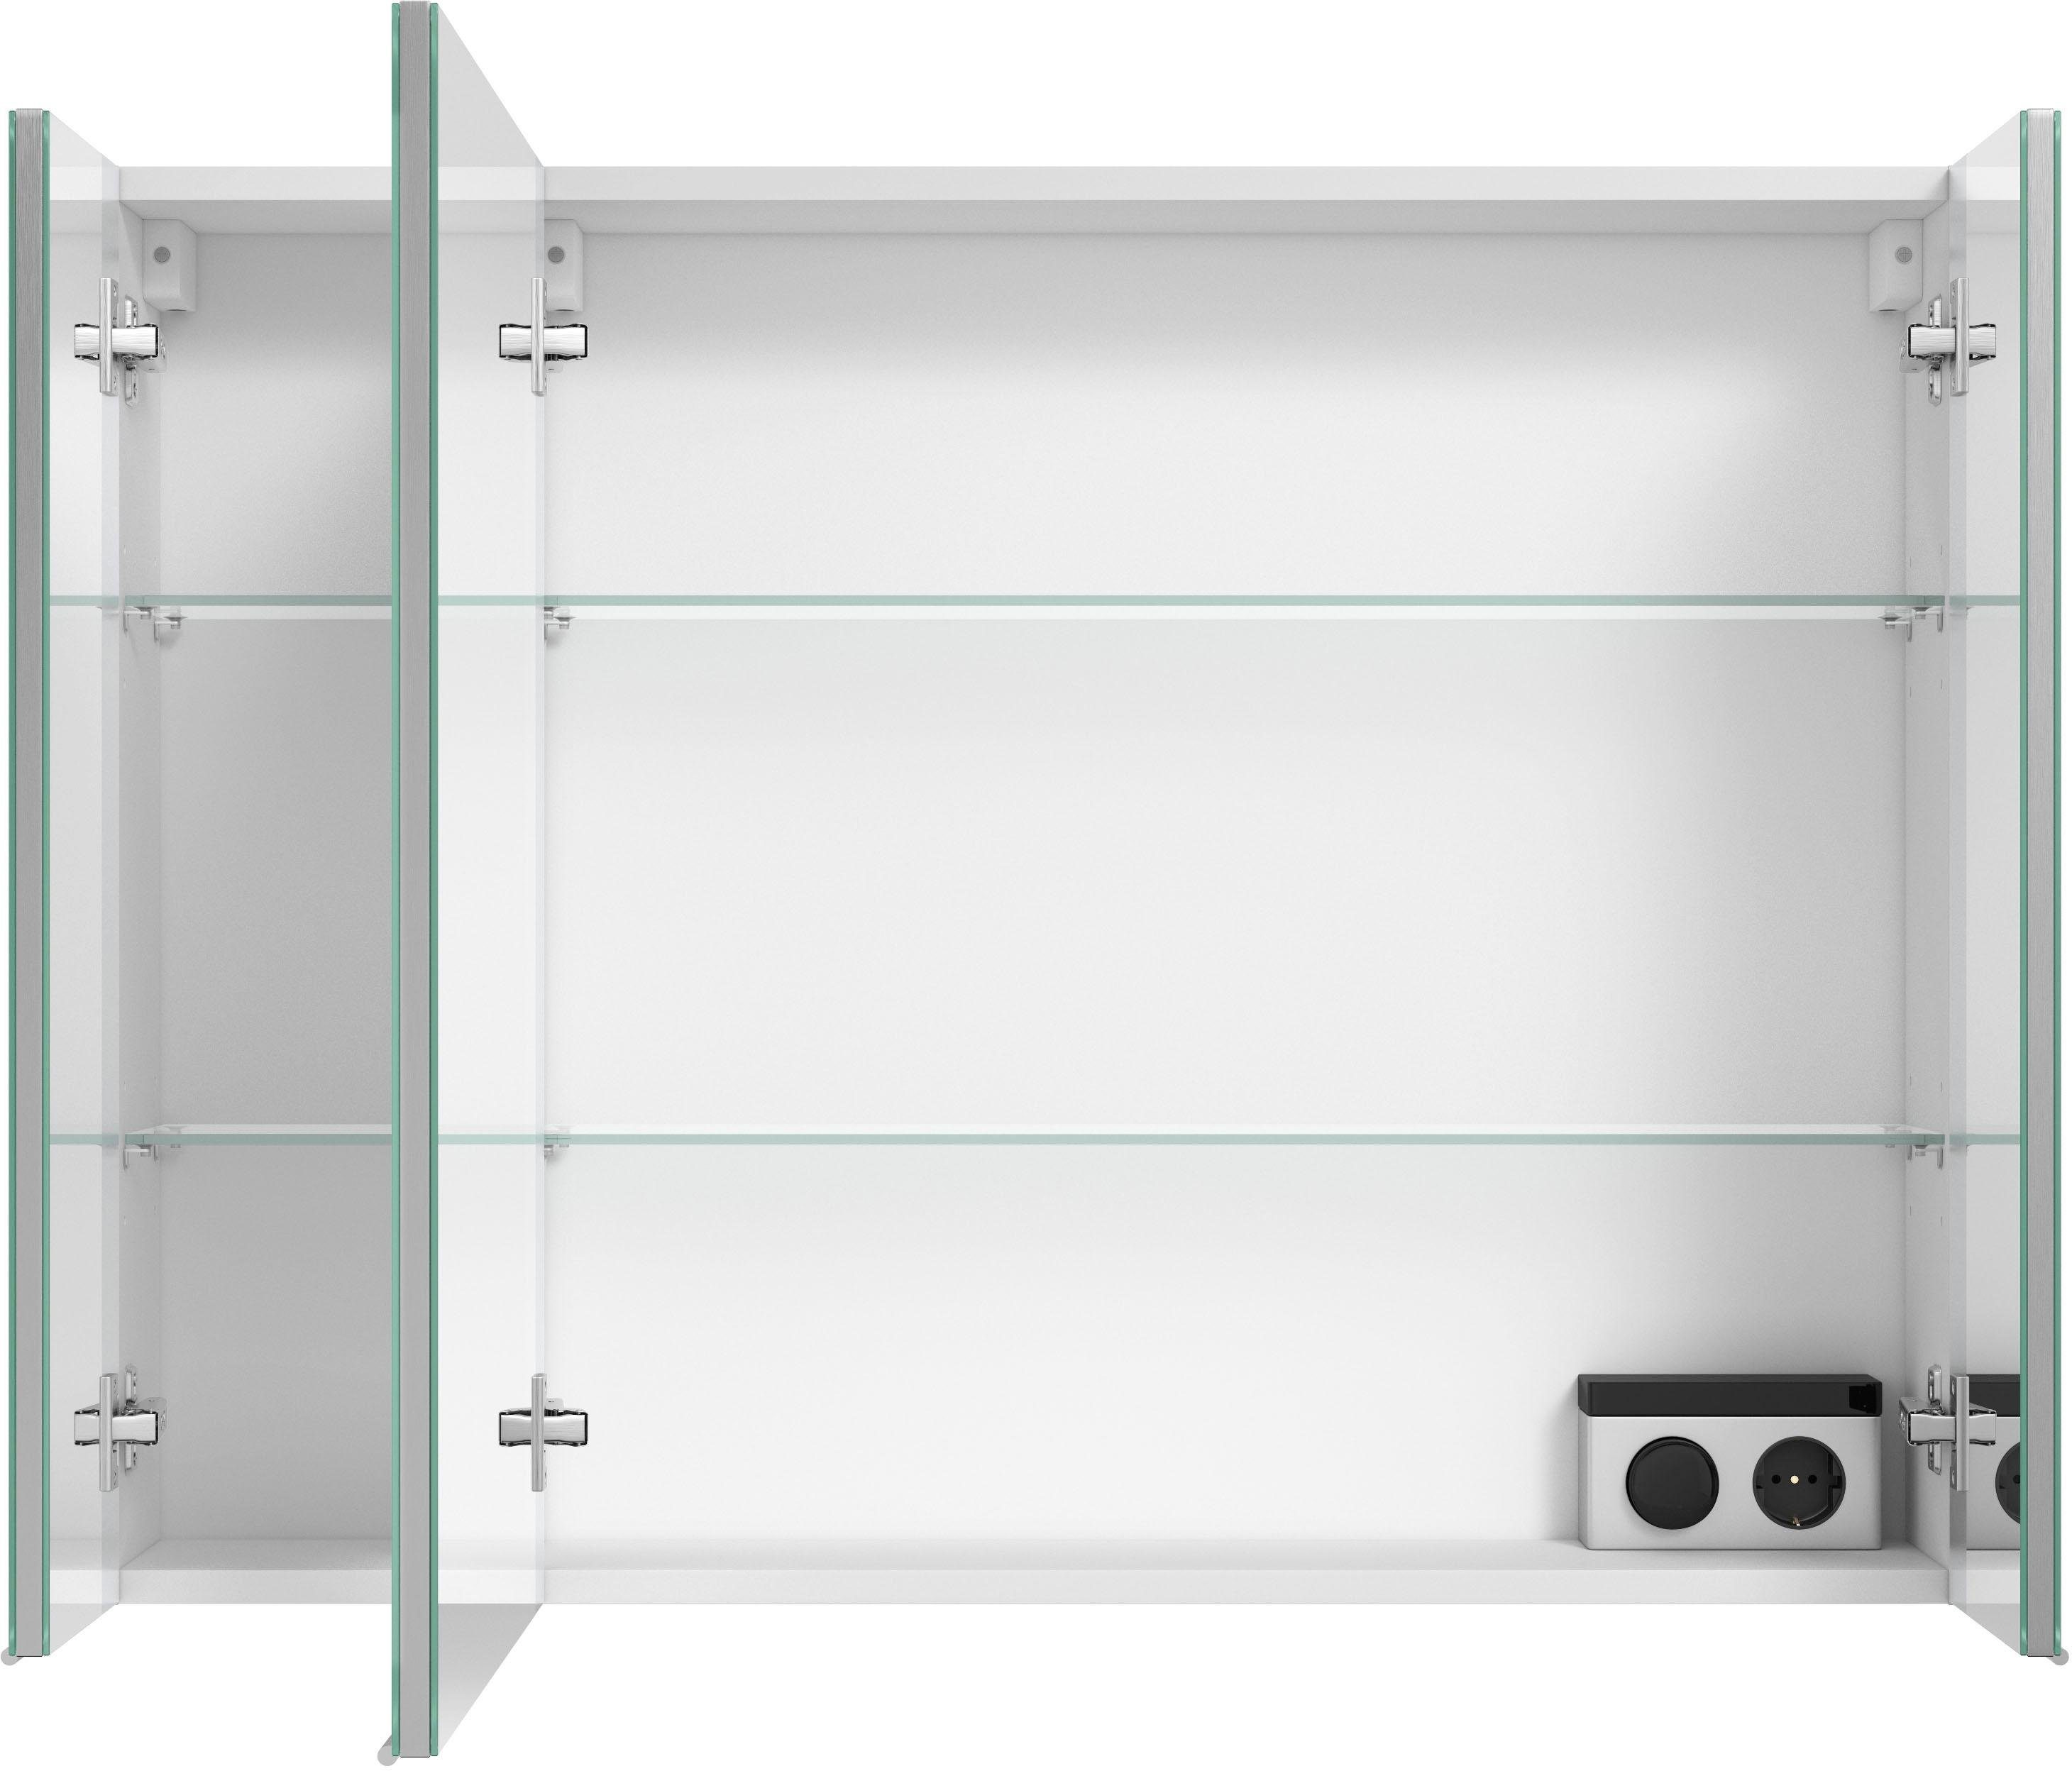 MARLIN Spiegelschrank mit verspiegelten Türen, vormontiert 3980 doppelseitig